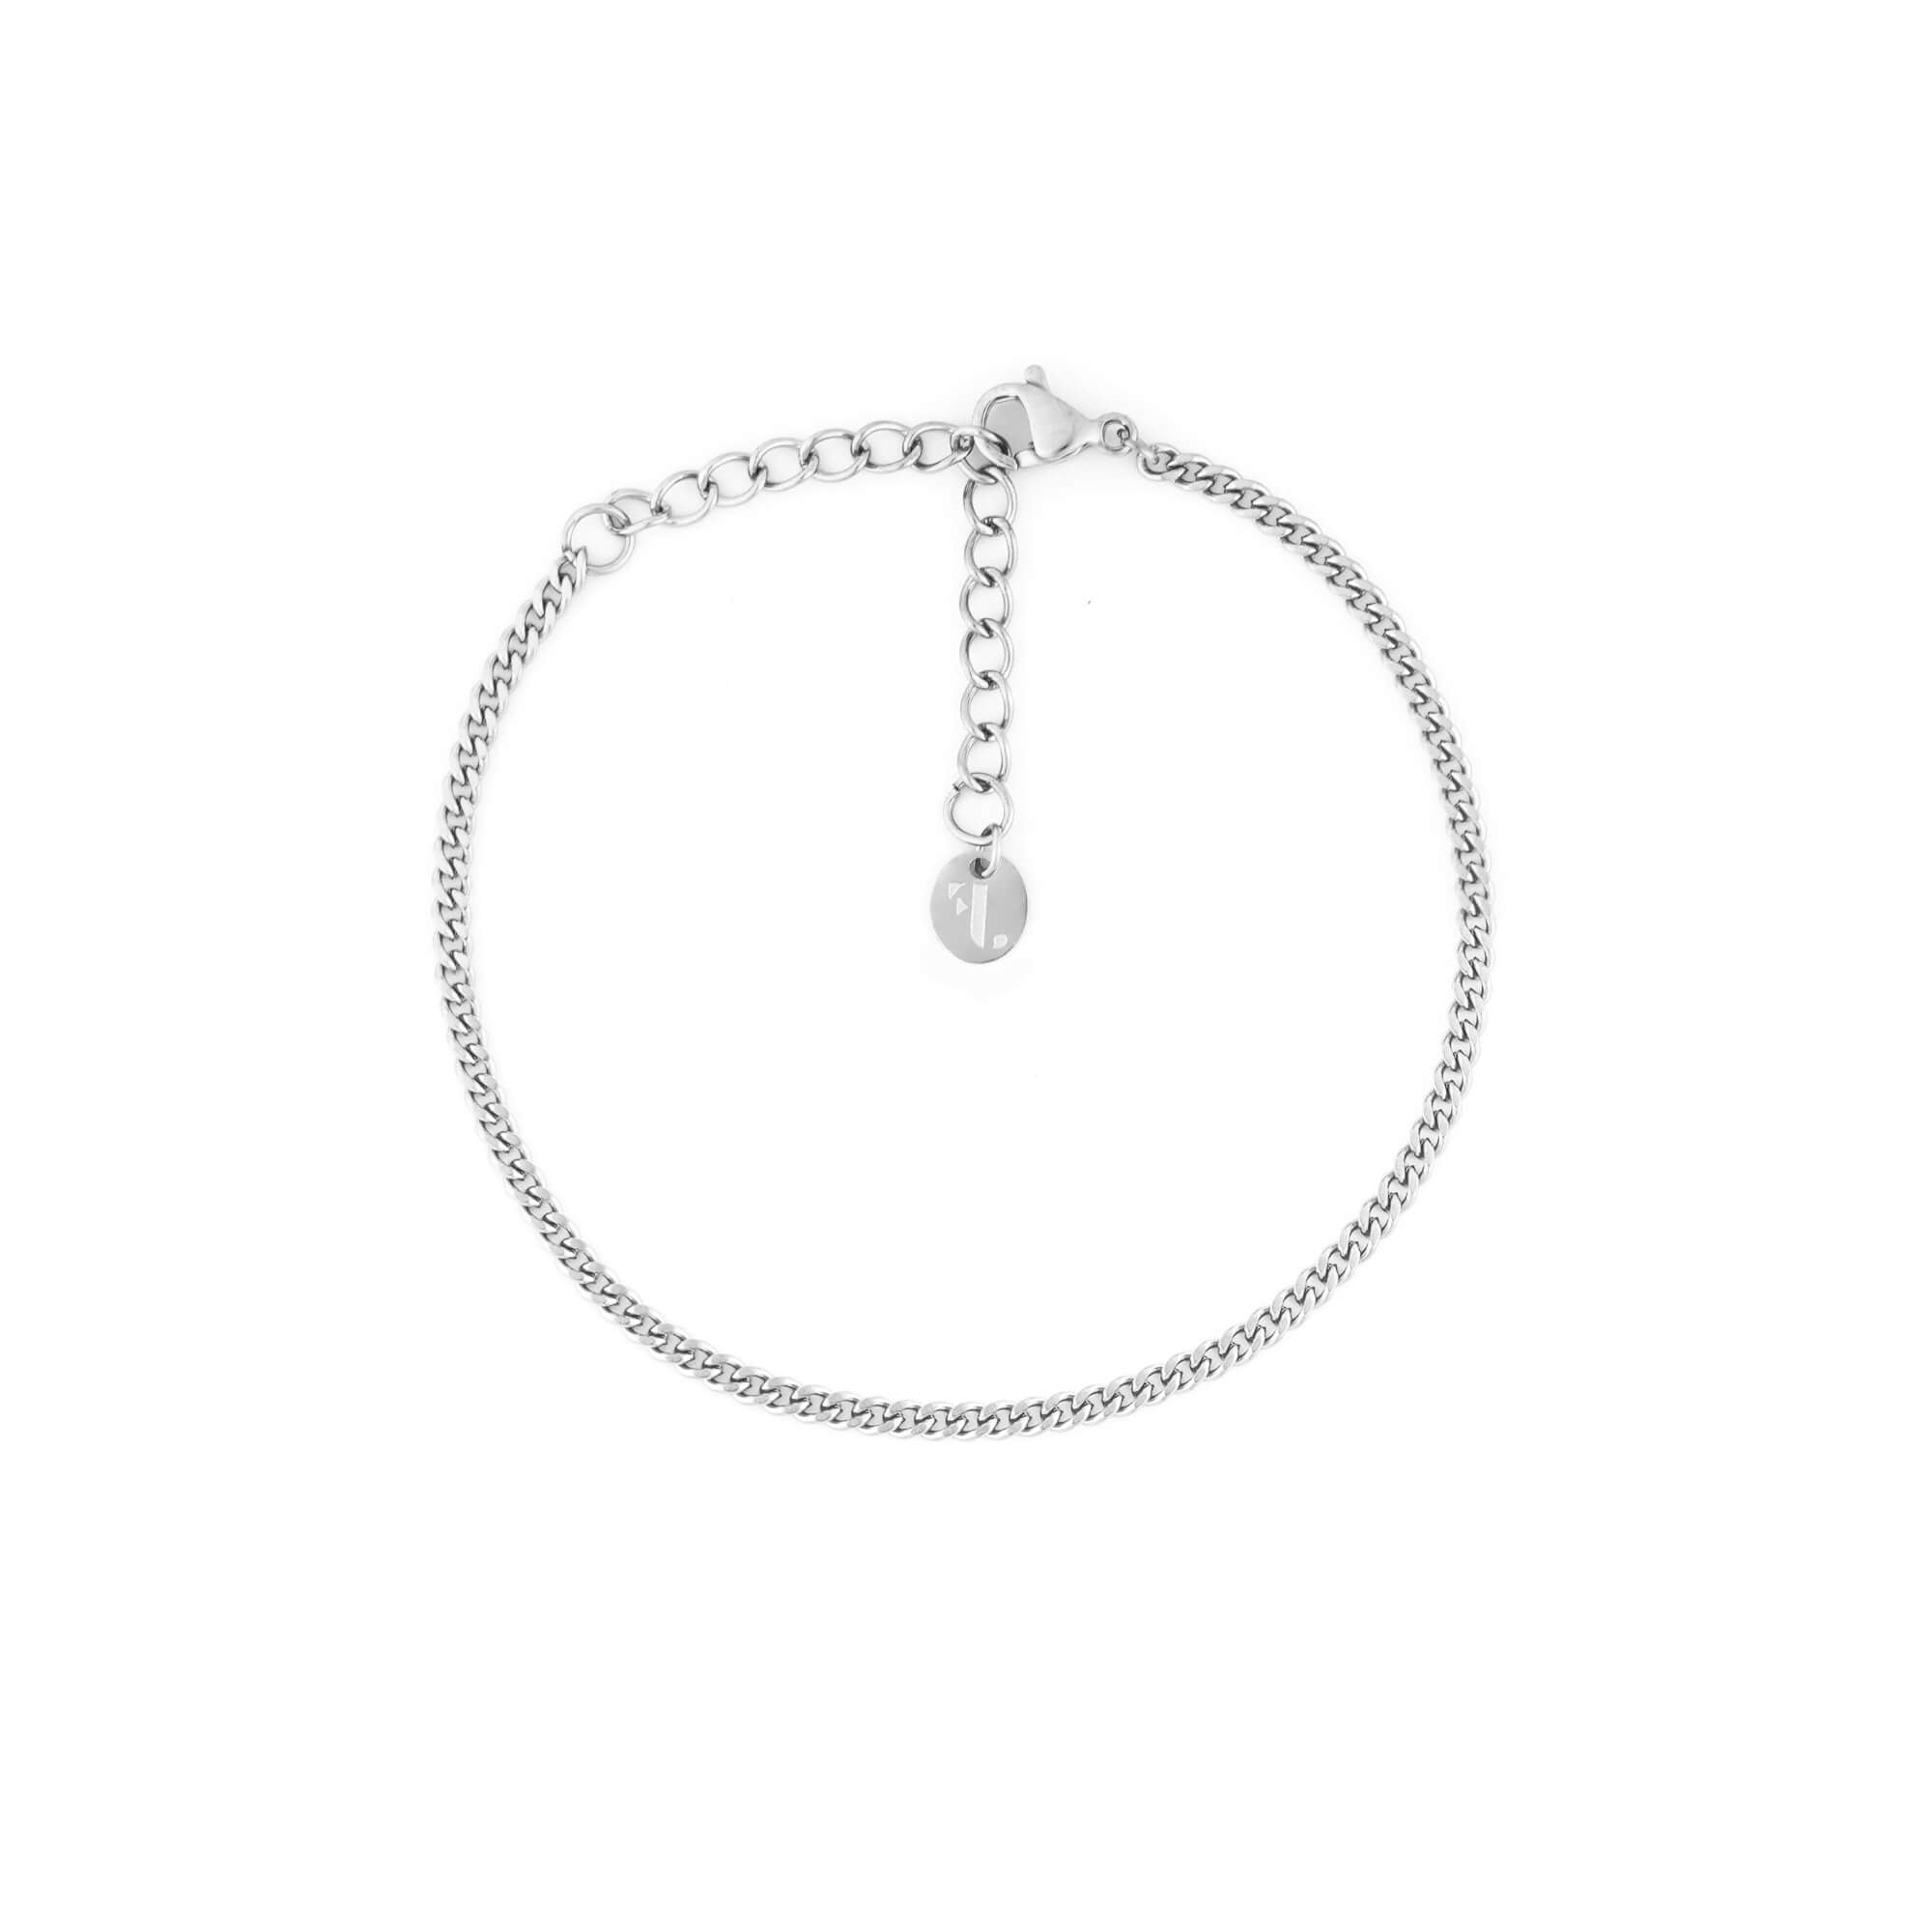 loen silver argent bracelet curb gourmette fj watches jewelry bijou jewel stainless steel acier inoxydable 2mm women femme